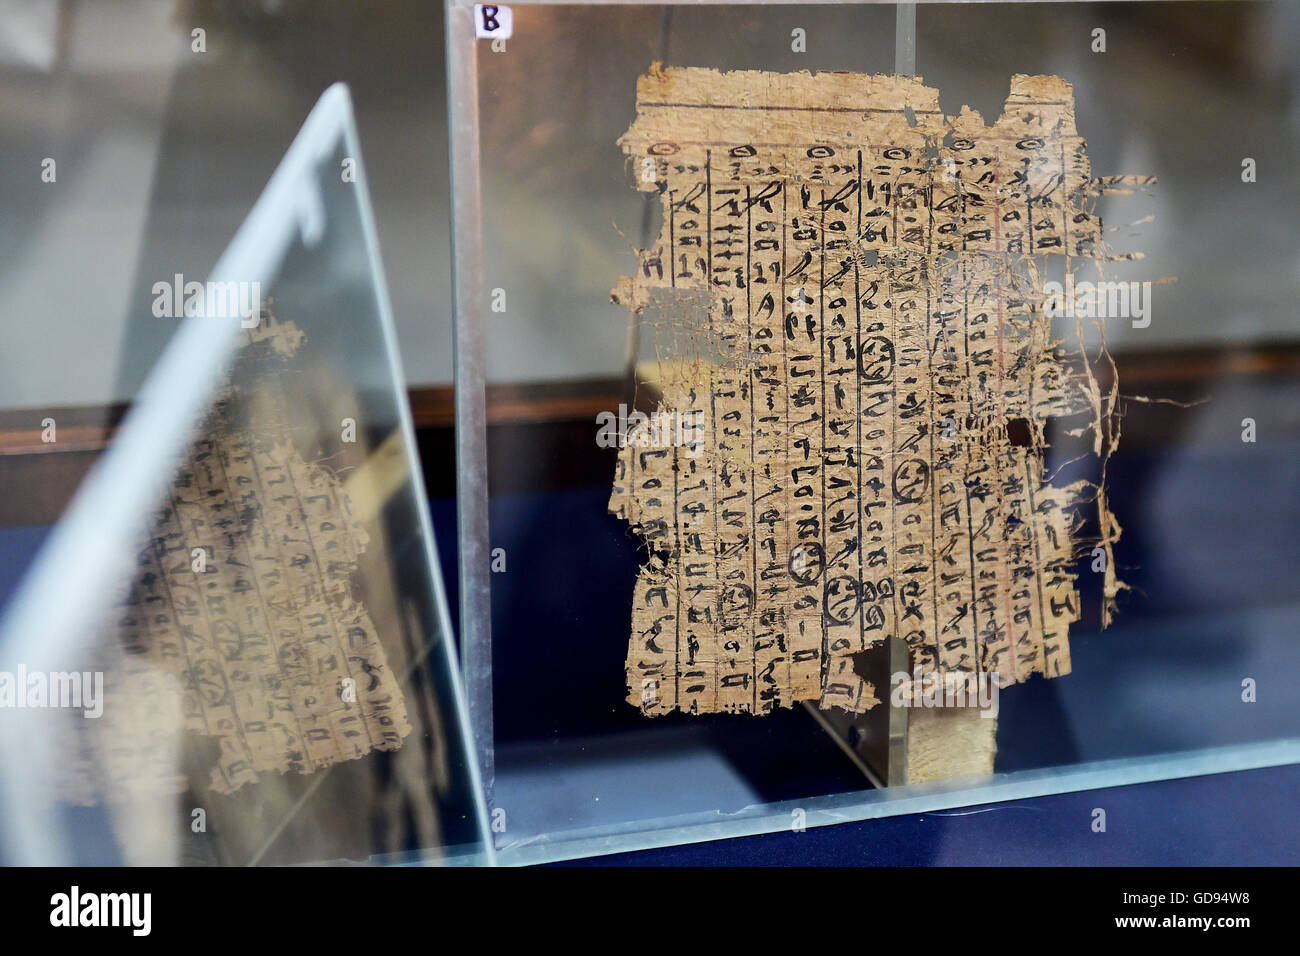 Le Caire. 14 juillet, 2016. Une partie de roi Khufu papyri du est affiché pour la première fois au Musée égyptien du Caire, Égypte le 14 juillet 2016. Le Musée égyptien du Caire a présenté pour la première fois une collection de papyrus qui remontent au roi Khufu, qui a régné au cours de la quatrième dynastie dans la première moitié de l'Ancien Empire (26e siècle avant J.-C.) dans l'Egypte ancienne. © Zhao Dingzhe/Xinhua/Alamy Live News Banque D'Images